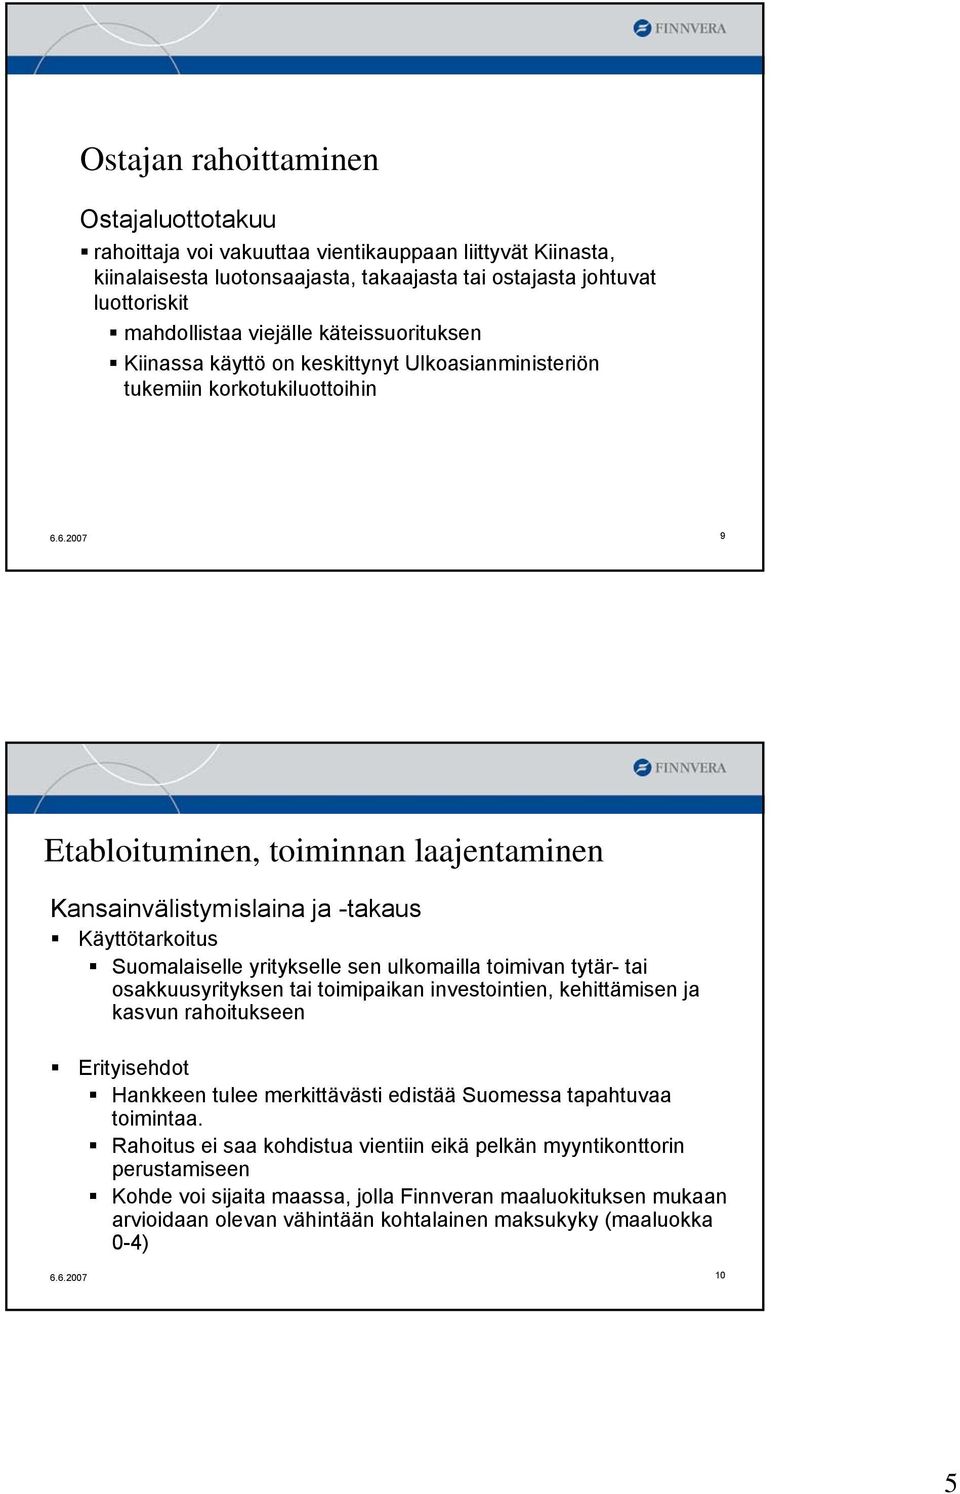 6.2007 9 Etabloituminen, toiminnan laajentaminen Kansainvälistymislaina ja -takaus Käyttötarkoitus Suomalaiselle yritykselle sen ulkomailla toimivan tytär- tai osakkuusyrityksen tai toimipaikan